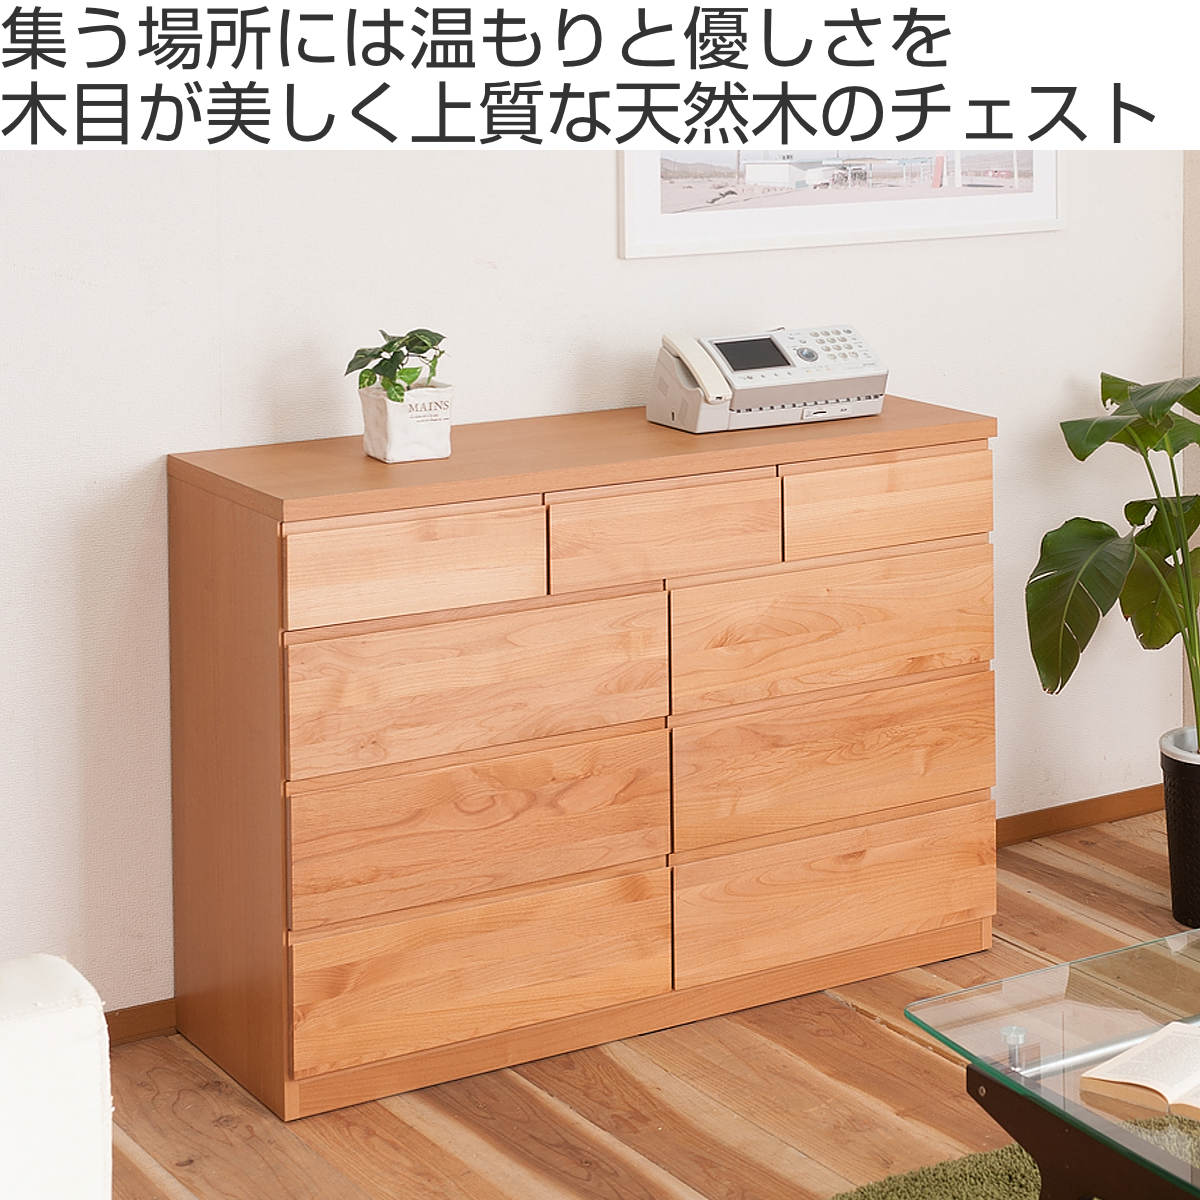 ハイチェスト【幅90cm】 木製(天然木) 日本製 ダークブラウン